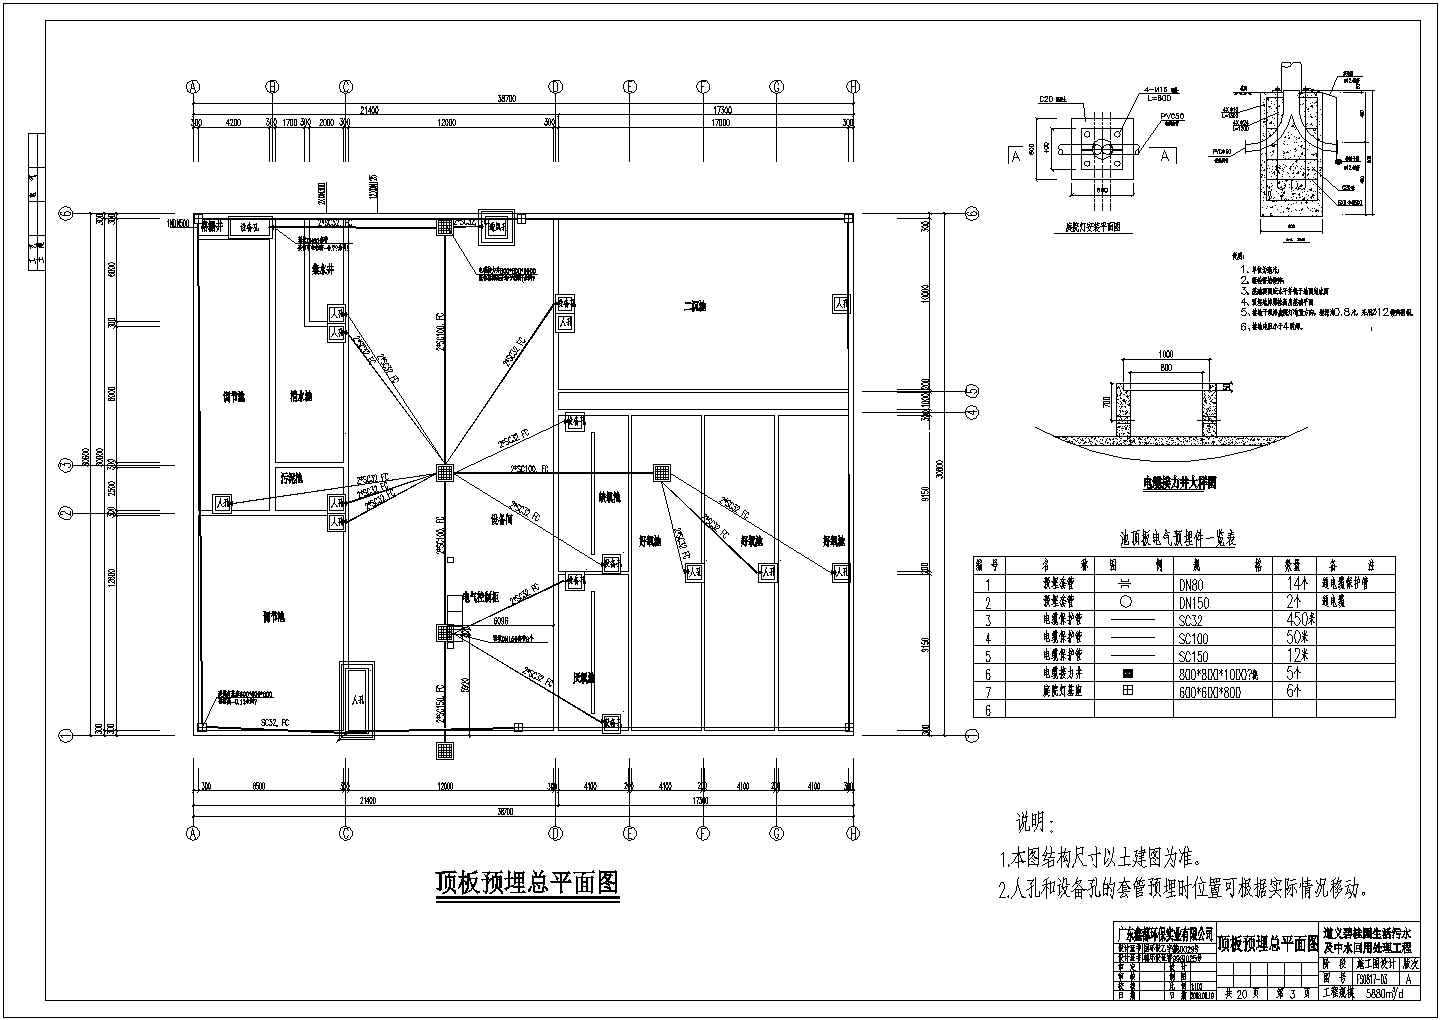 道义碧桂园生活污水及中水处理工程电气设计图